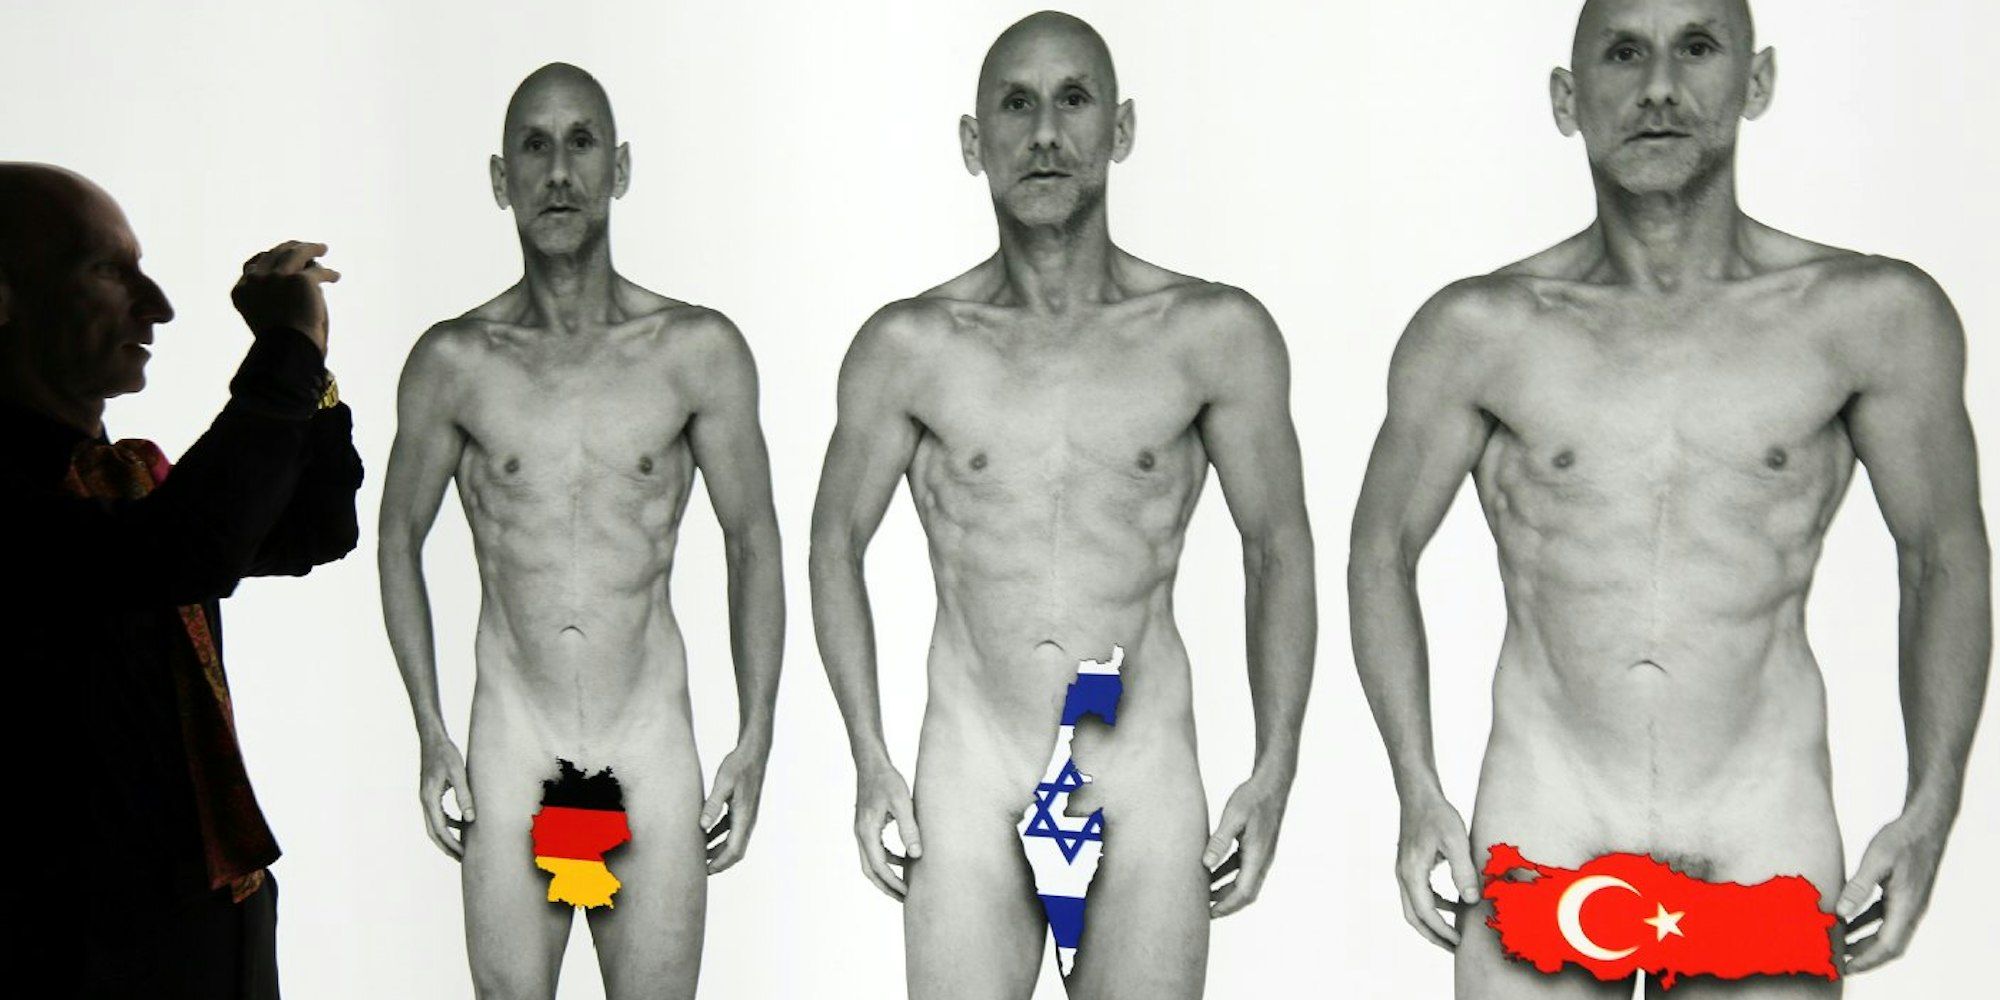 Ein Mann dokumentiert im Jüdischen Museum in Berlin Exponate der Sonderausstellung "Haut ab! Haltungen zur rituellen Beschneidung".